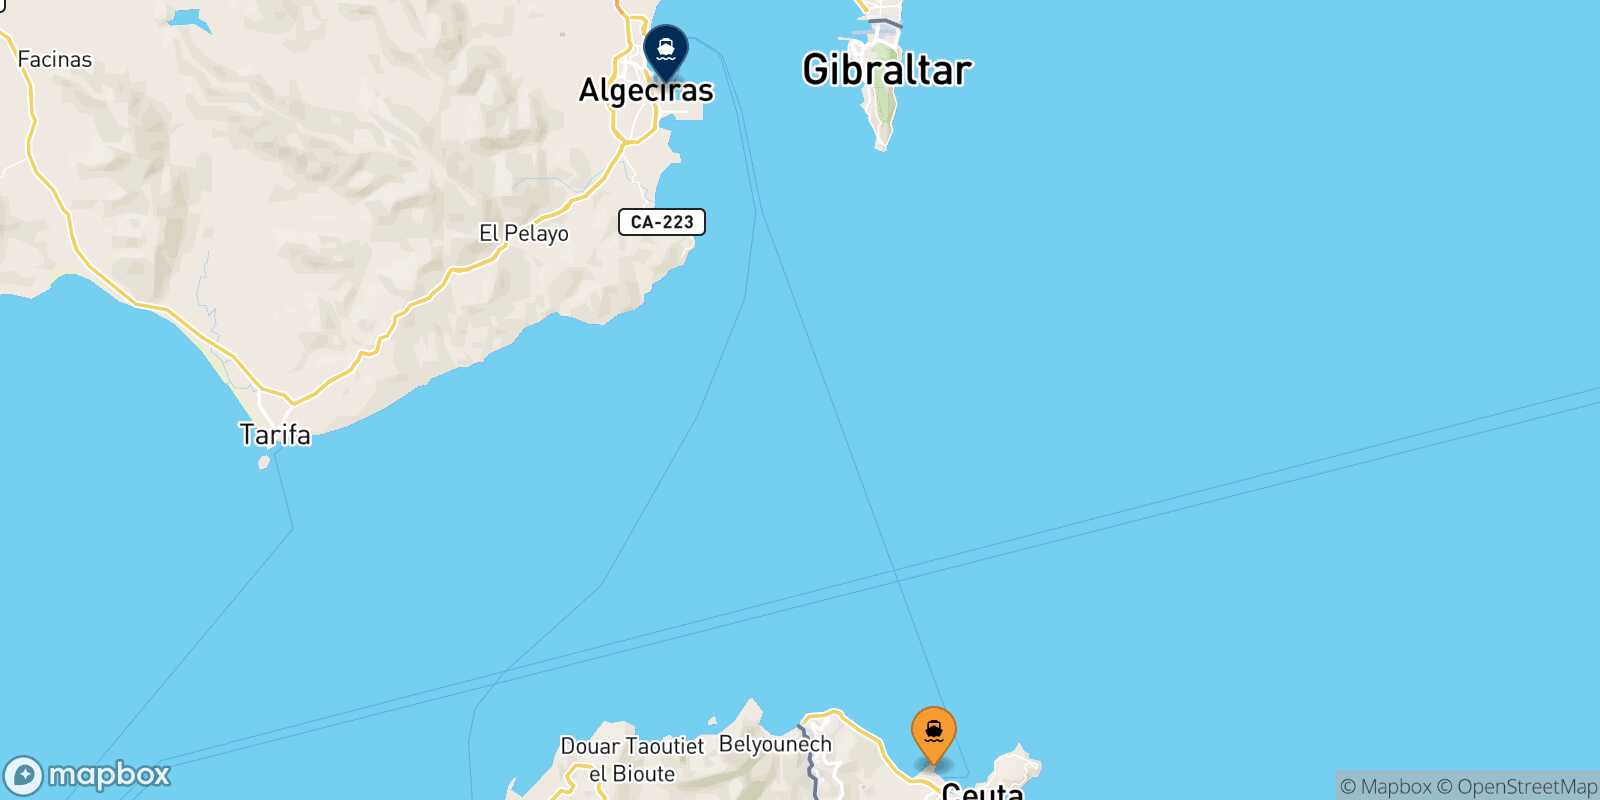 Mappa delle destinazioni raggiungibili da Ceuta